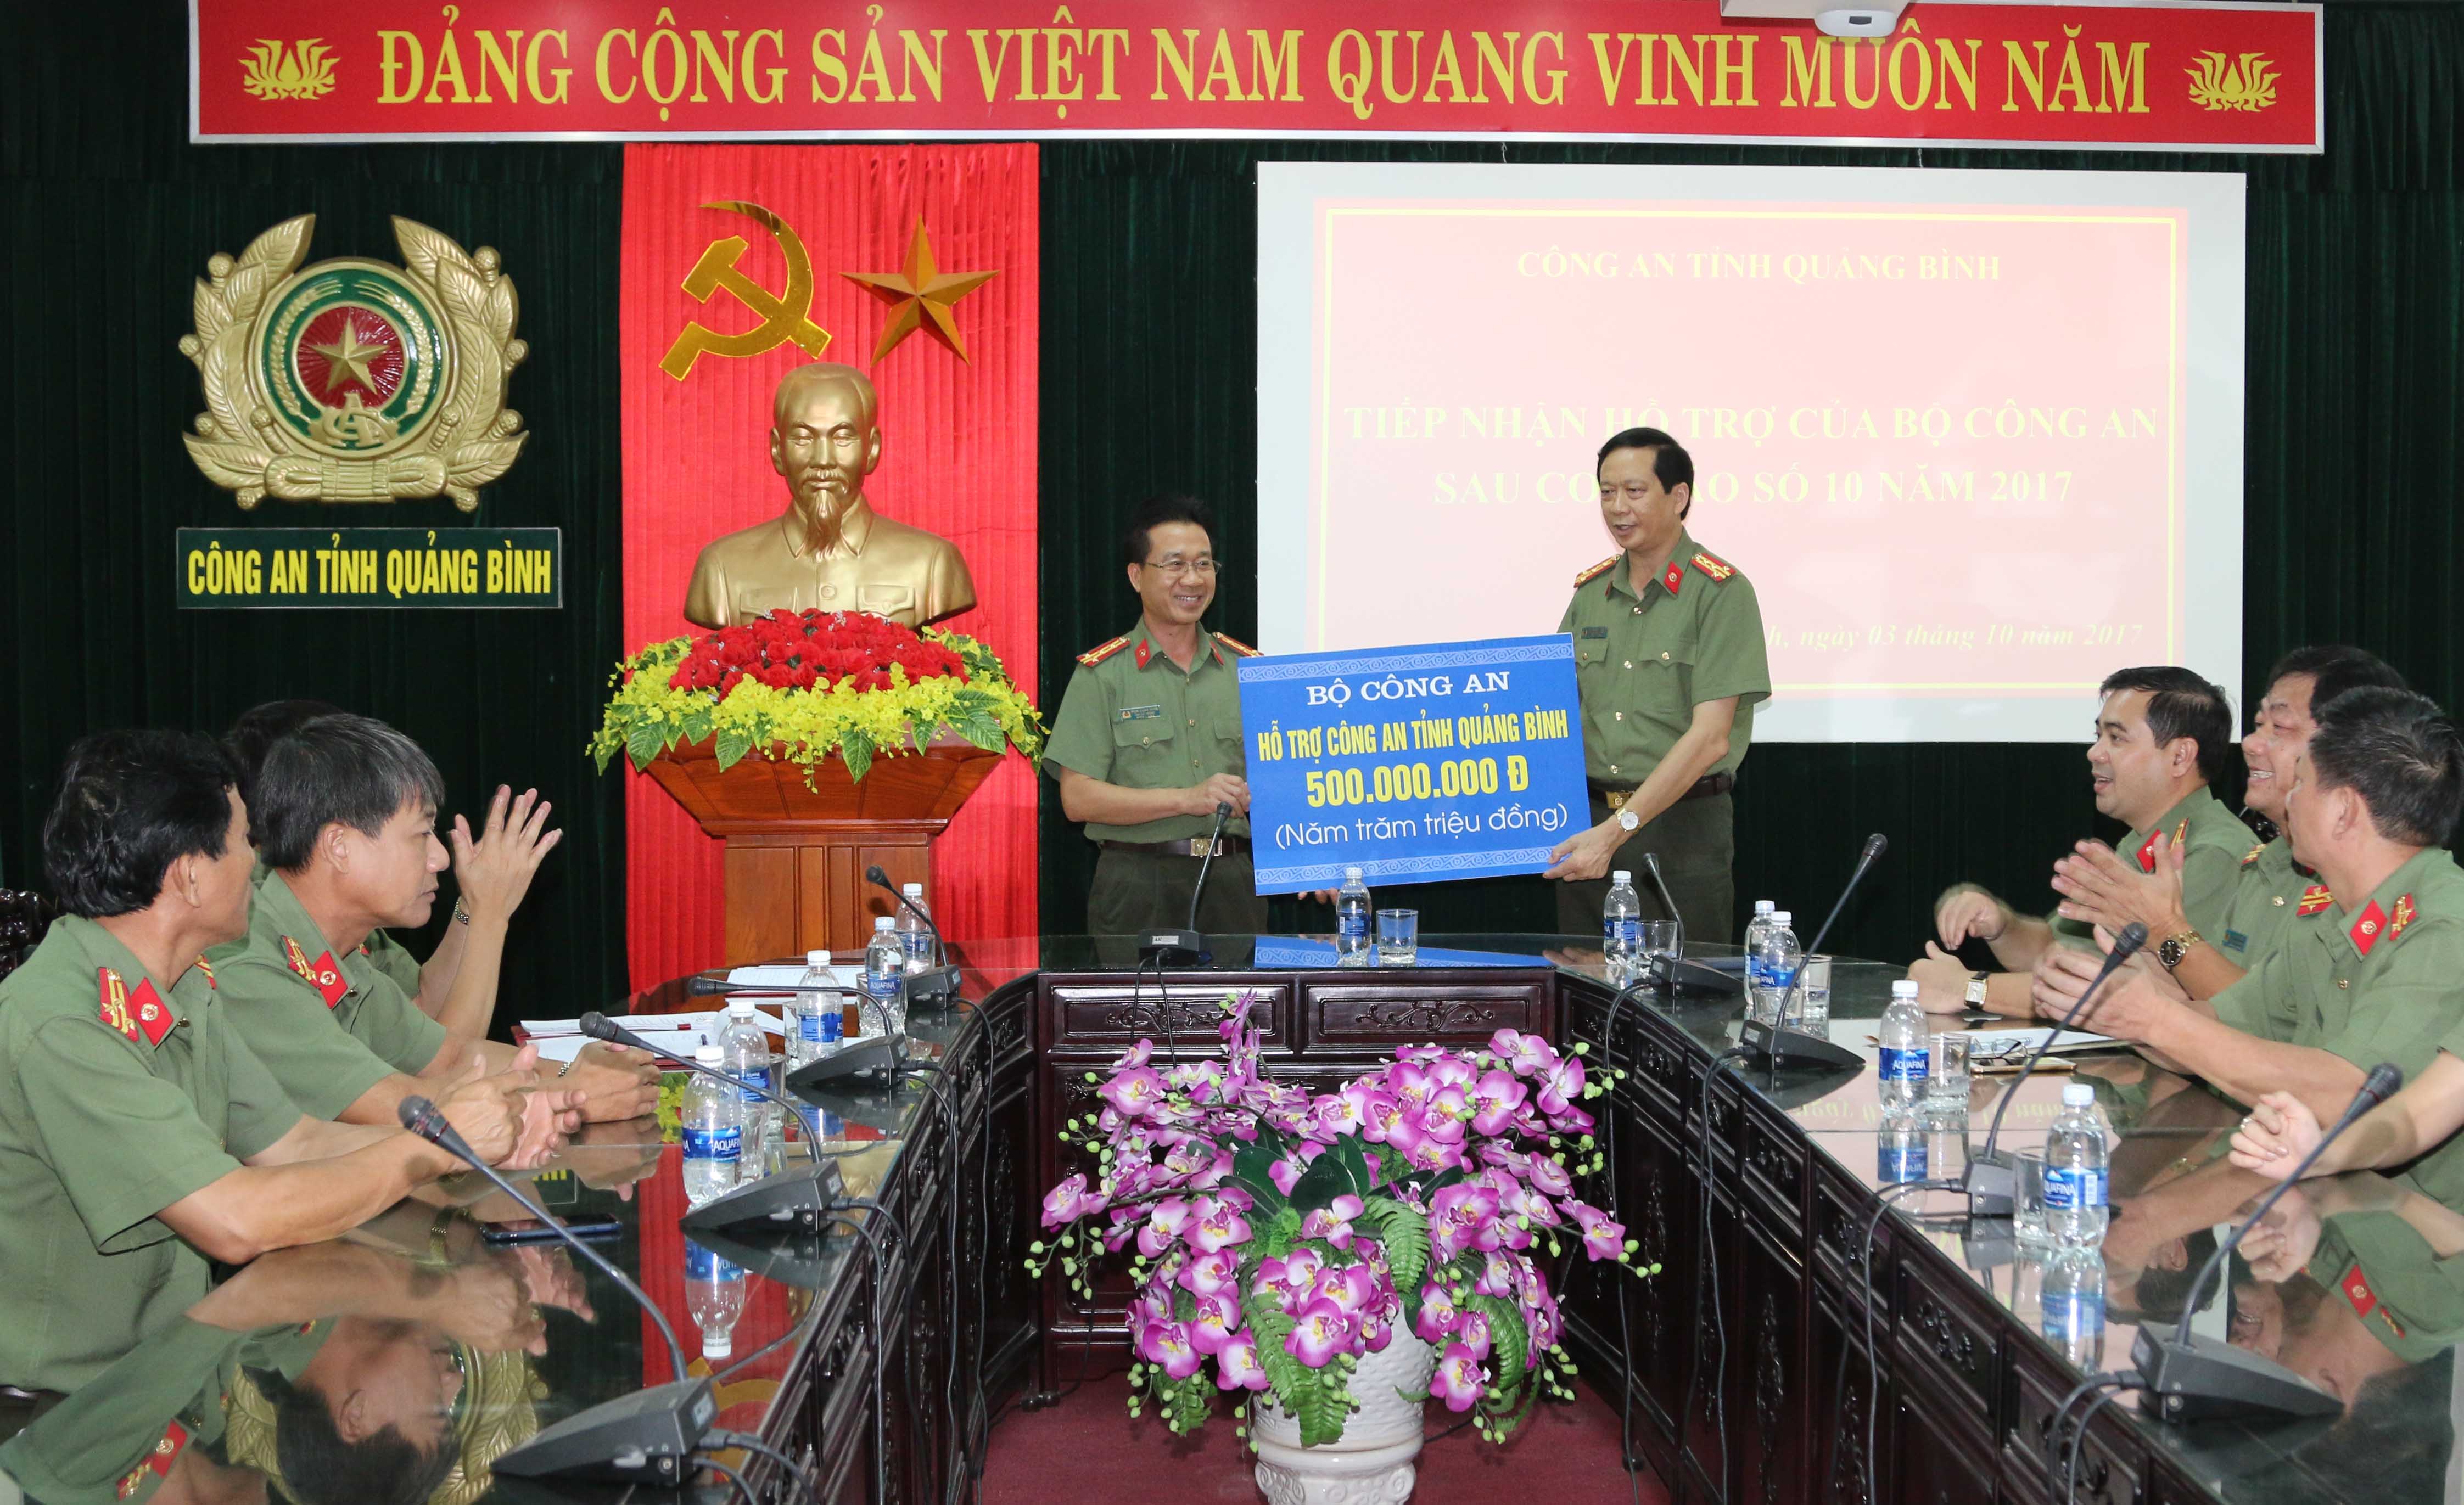 Đại tá Nguyễn Quốc Tường, Phó giám đốc Công an tỉnh tiếp nhận 500 triệu đồng do Bộ Công an hỗ trợ khắc phục hậu quả bão số 10.